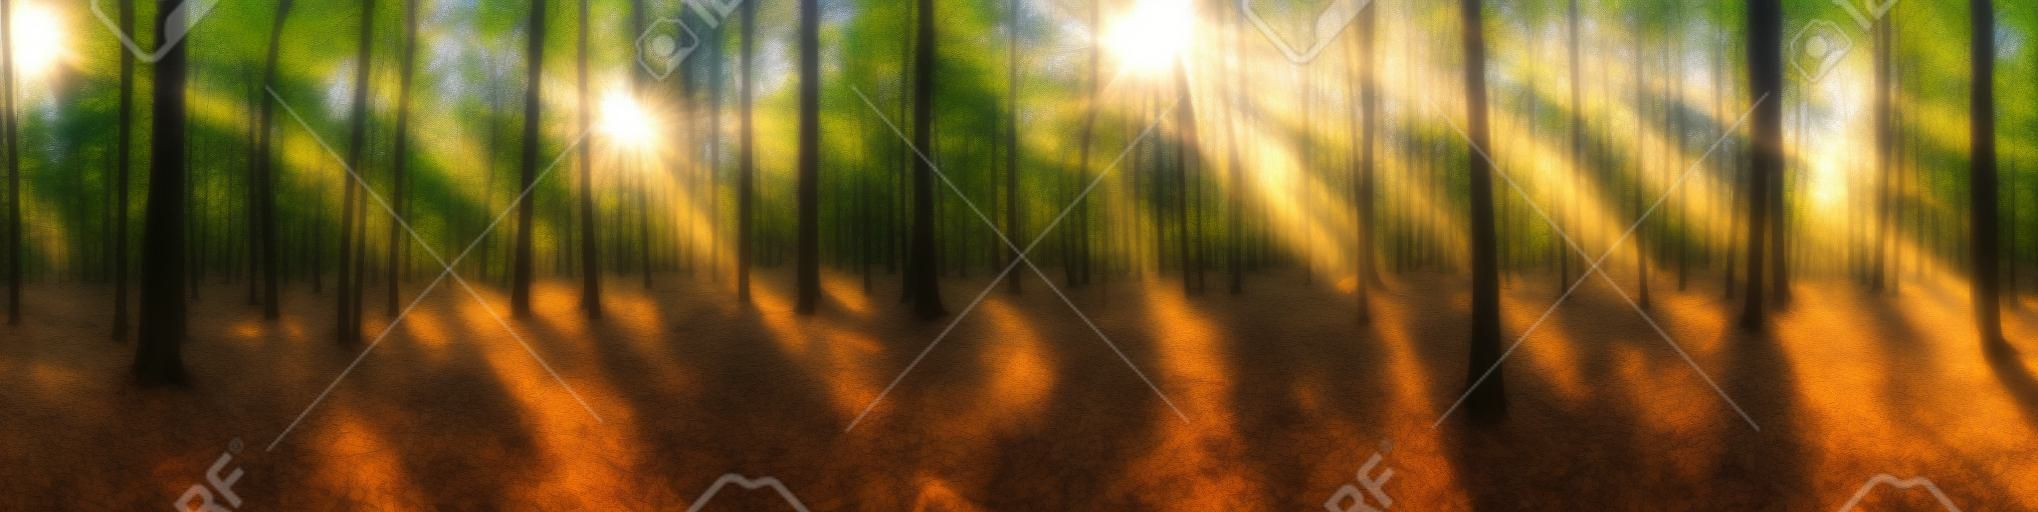 Bellissimo panorama della foresta con un sole splendente che splende attraverso gli alberi